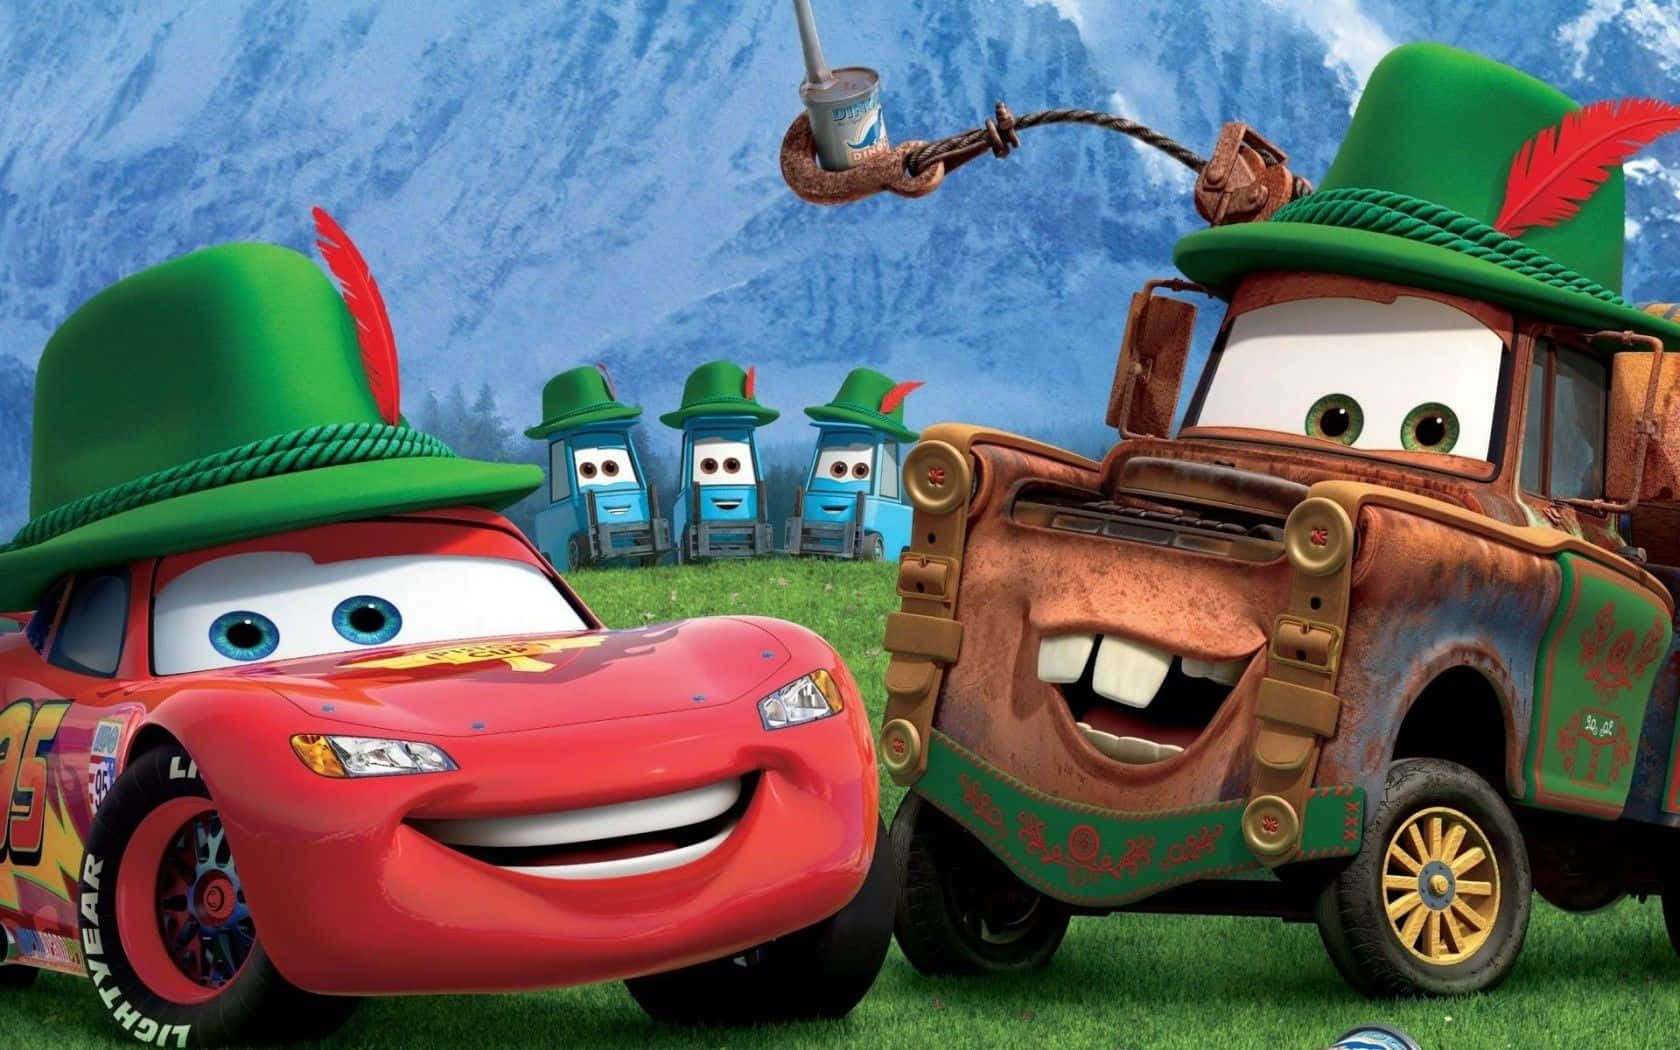 Disneybiler - En Tegnefilm Med To Biler I En Grøn Hat